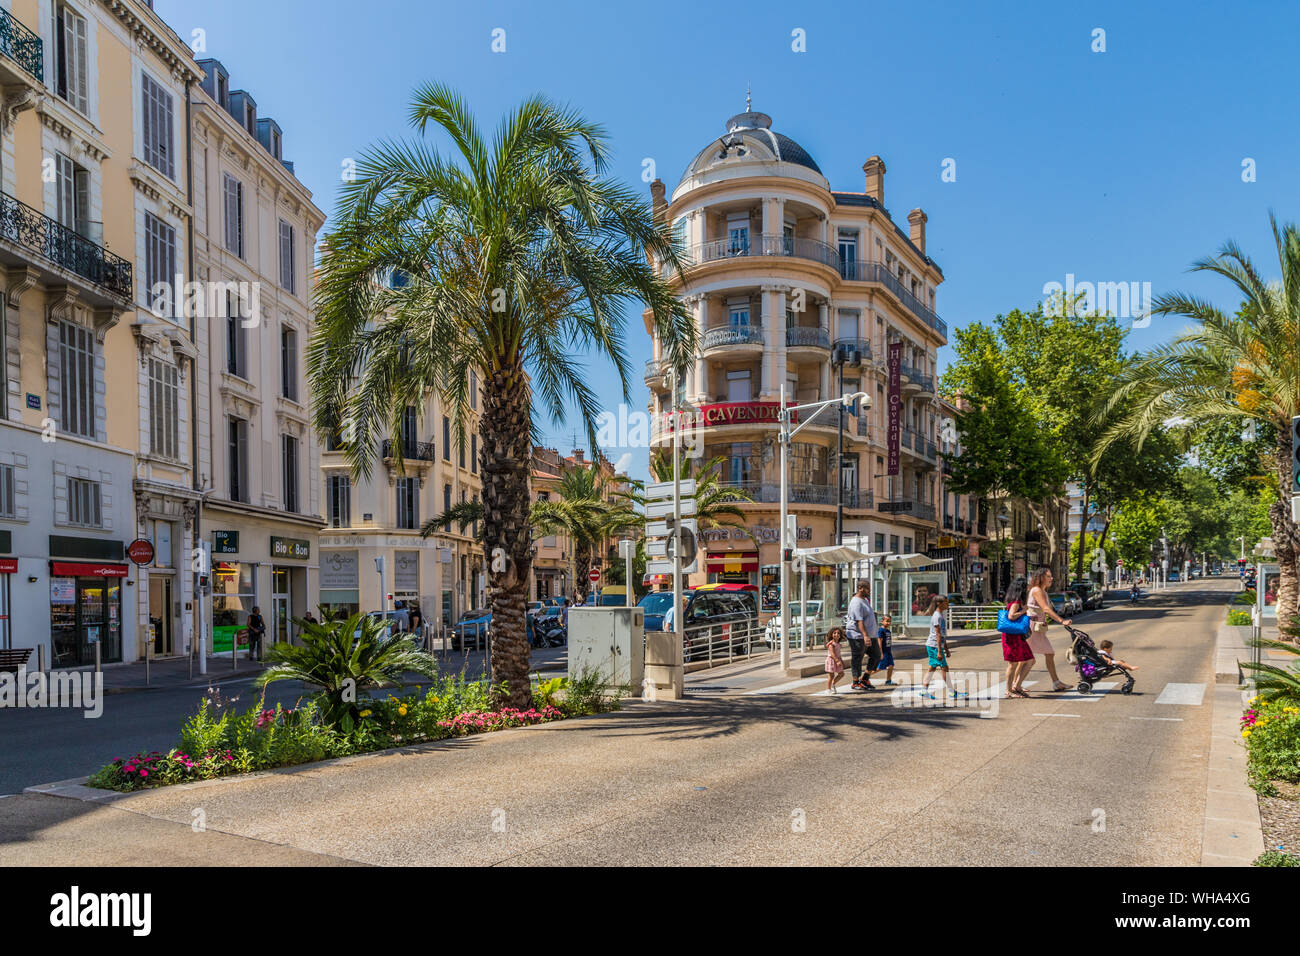 Une scène de rue dans la vieille ville du Suquet à Cannes, Alpes Maritimes, Côte d'Azur, French Riviera, Provence, France, Europe, Méditerranée Banque D'Images